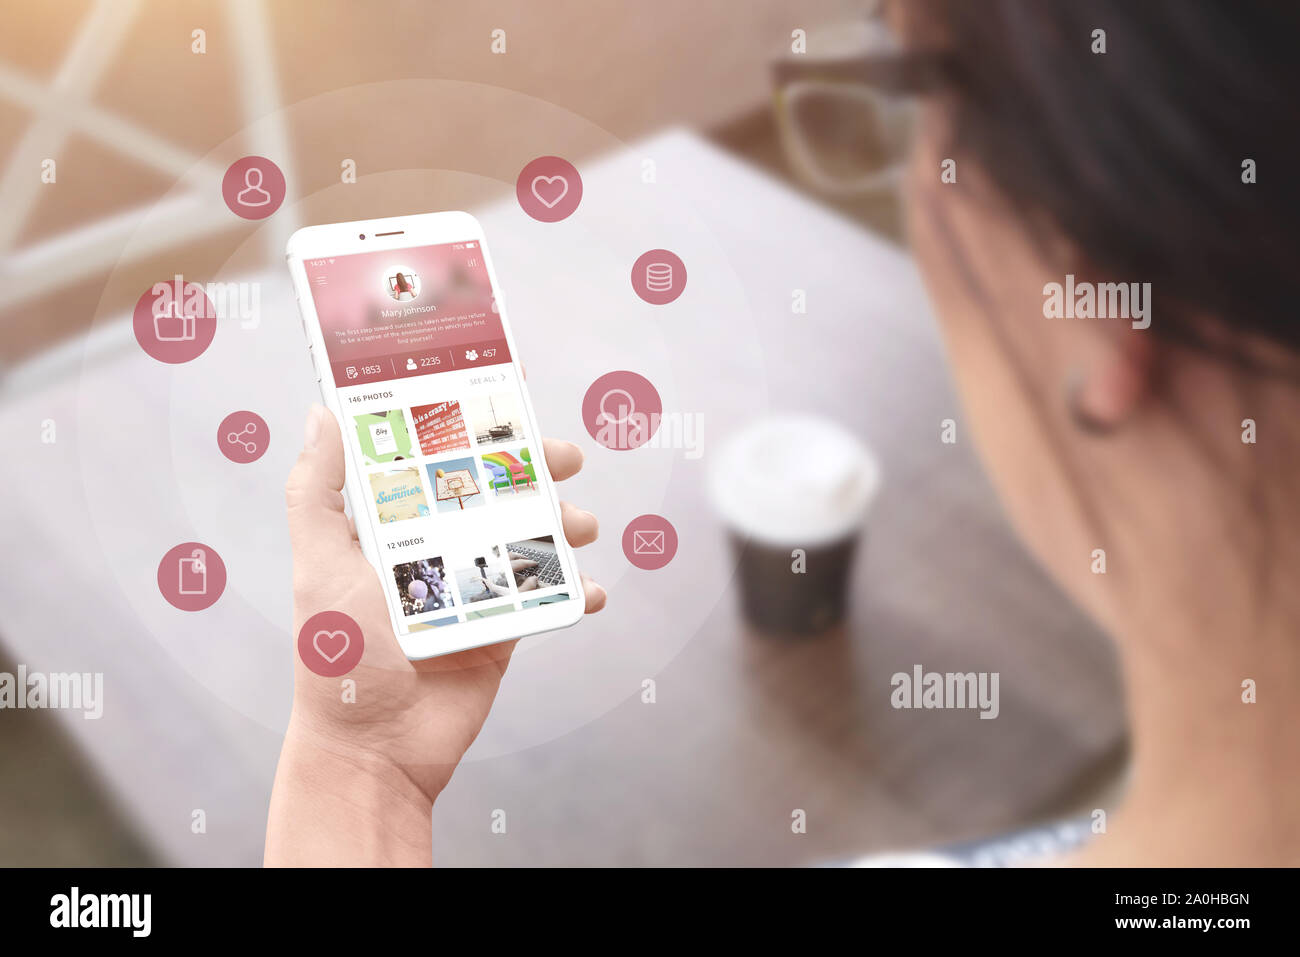 Mädchen nutzen Social Network app auf Smart Phone. Konzept der Social Network Marketing und Promotion. Stockfoto